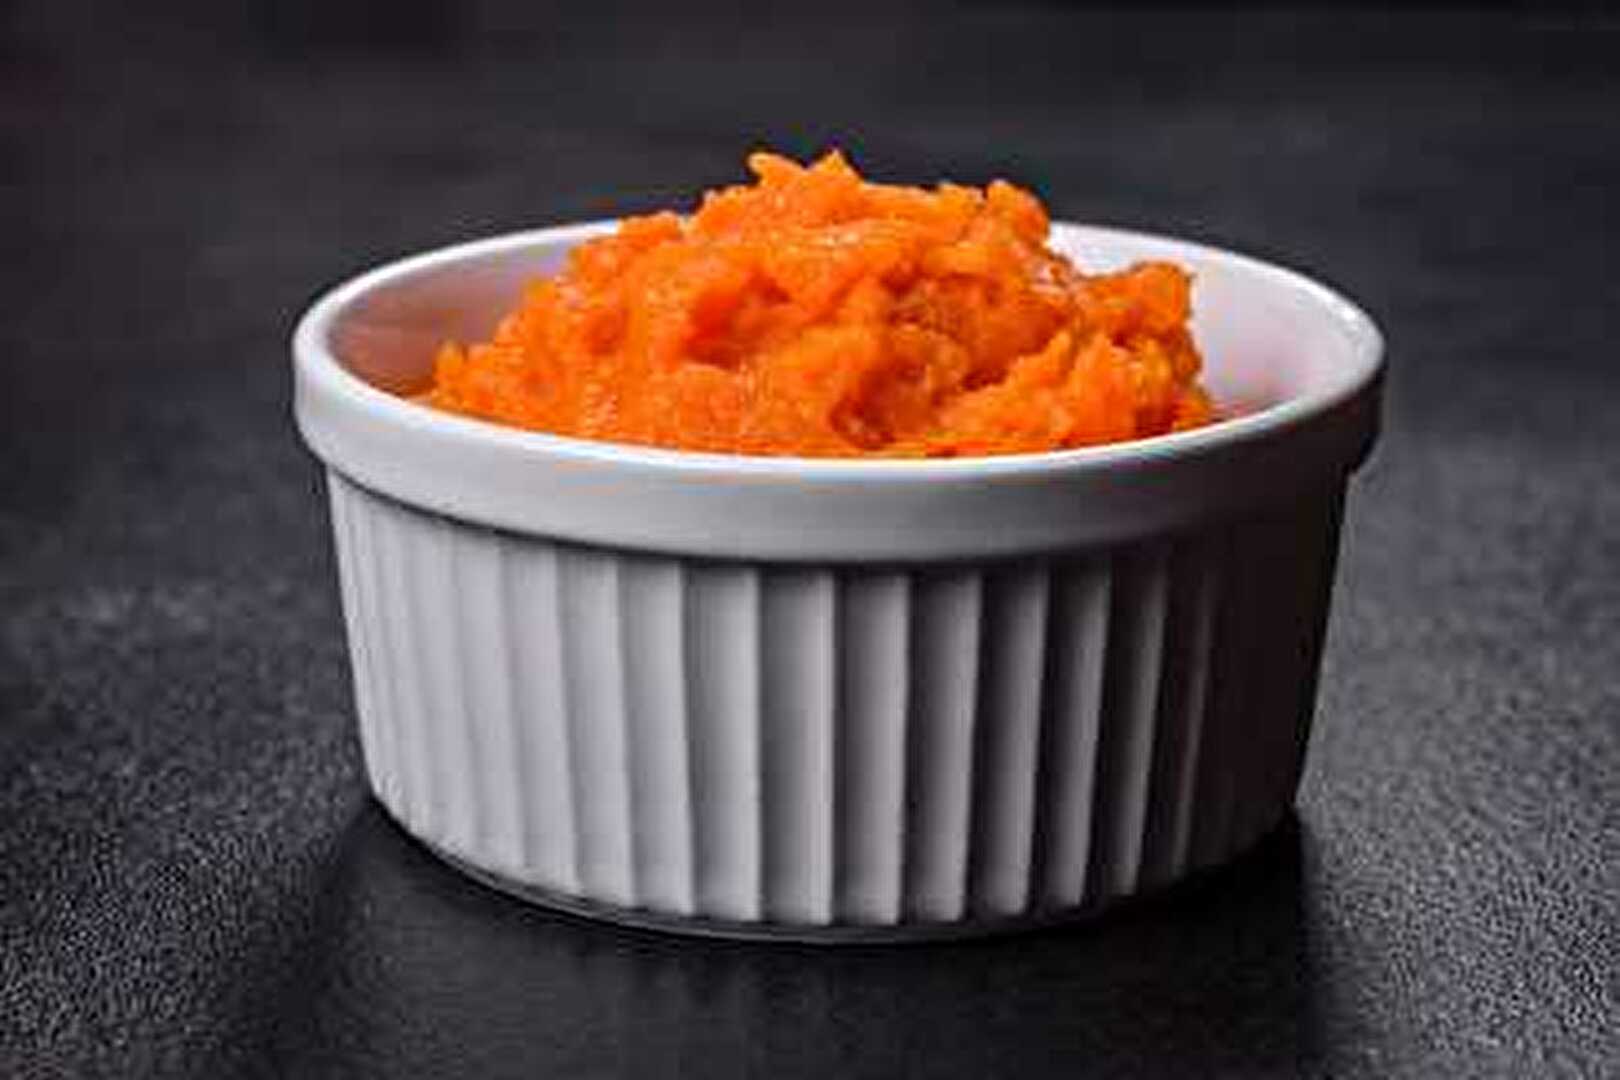 Purée de carottes : la recette parfaite pour une petite purée toute douce au robot cuiseur.